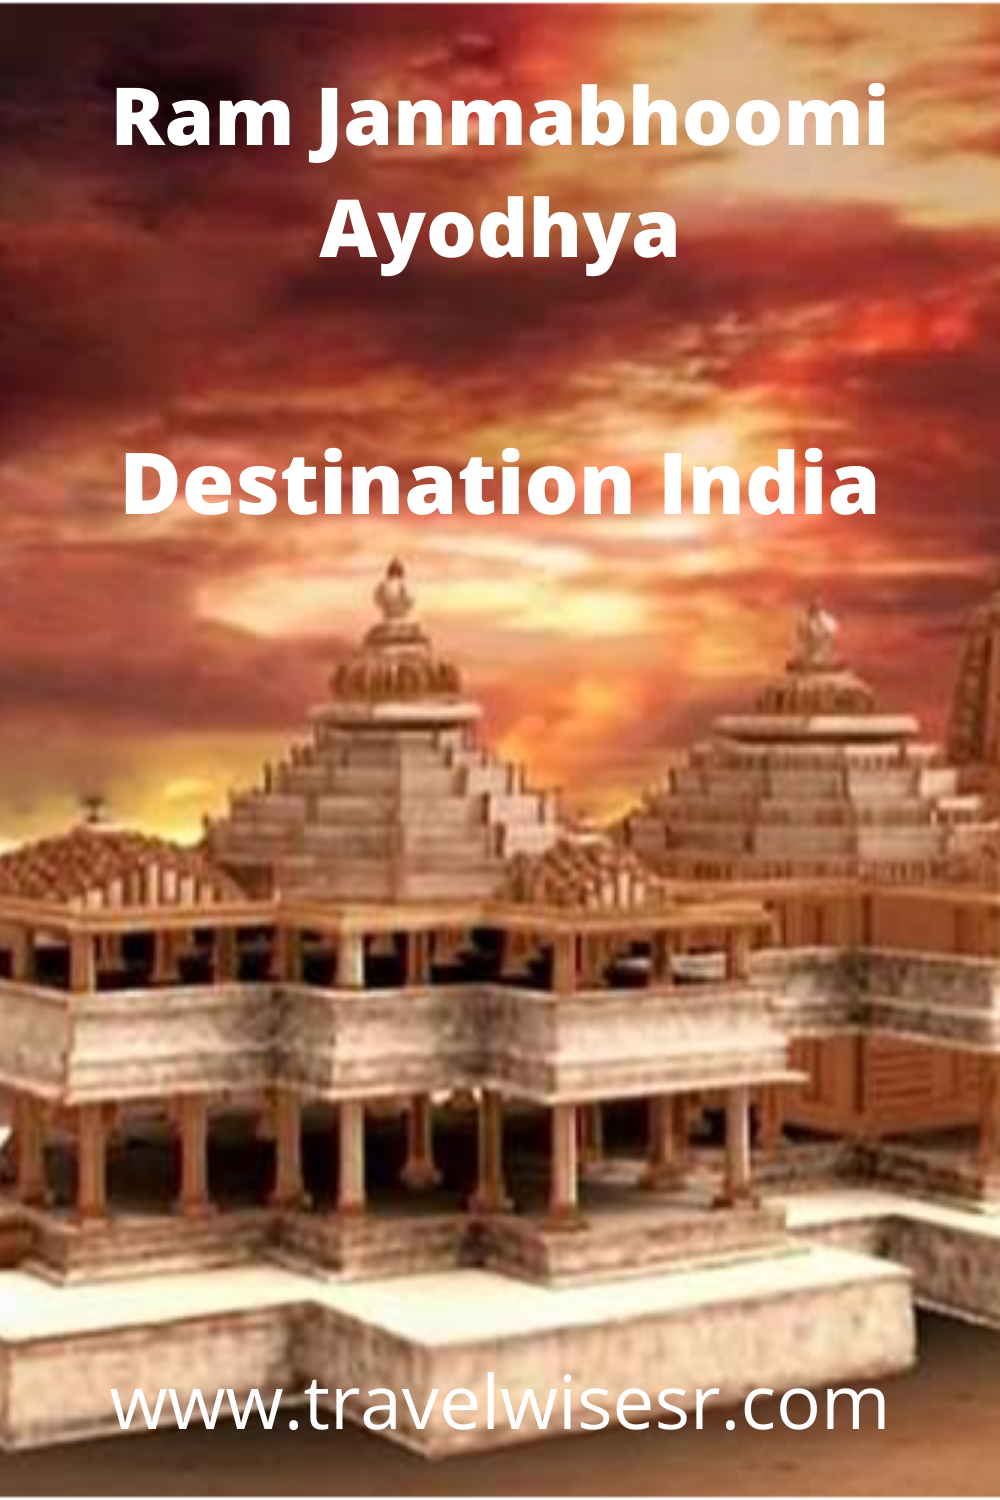 Ram Janmabhoomi Ayodhya